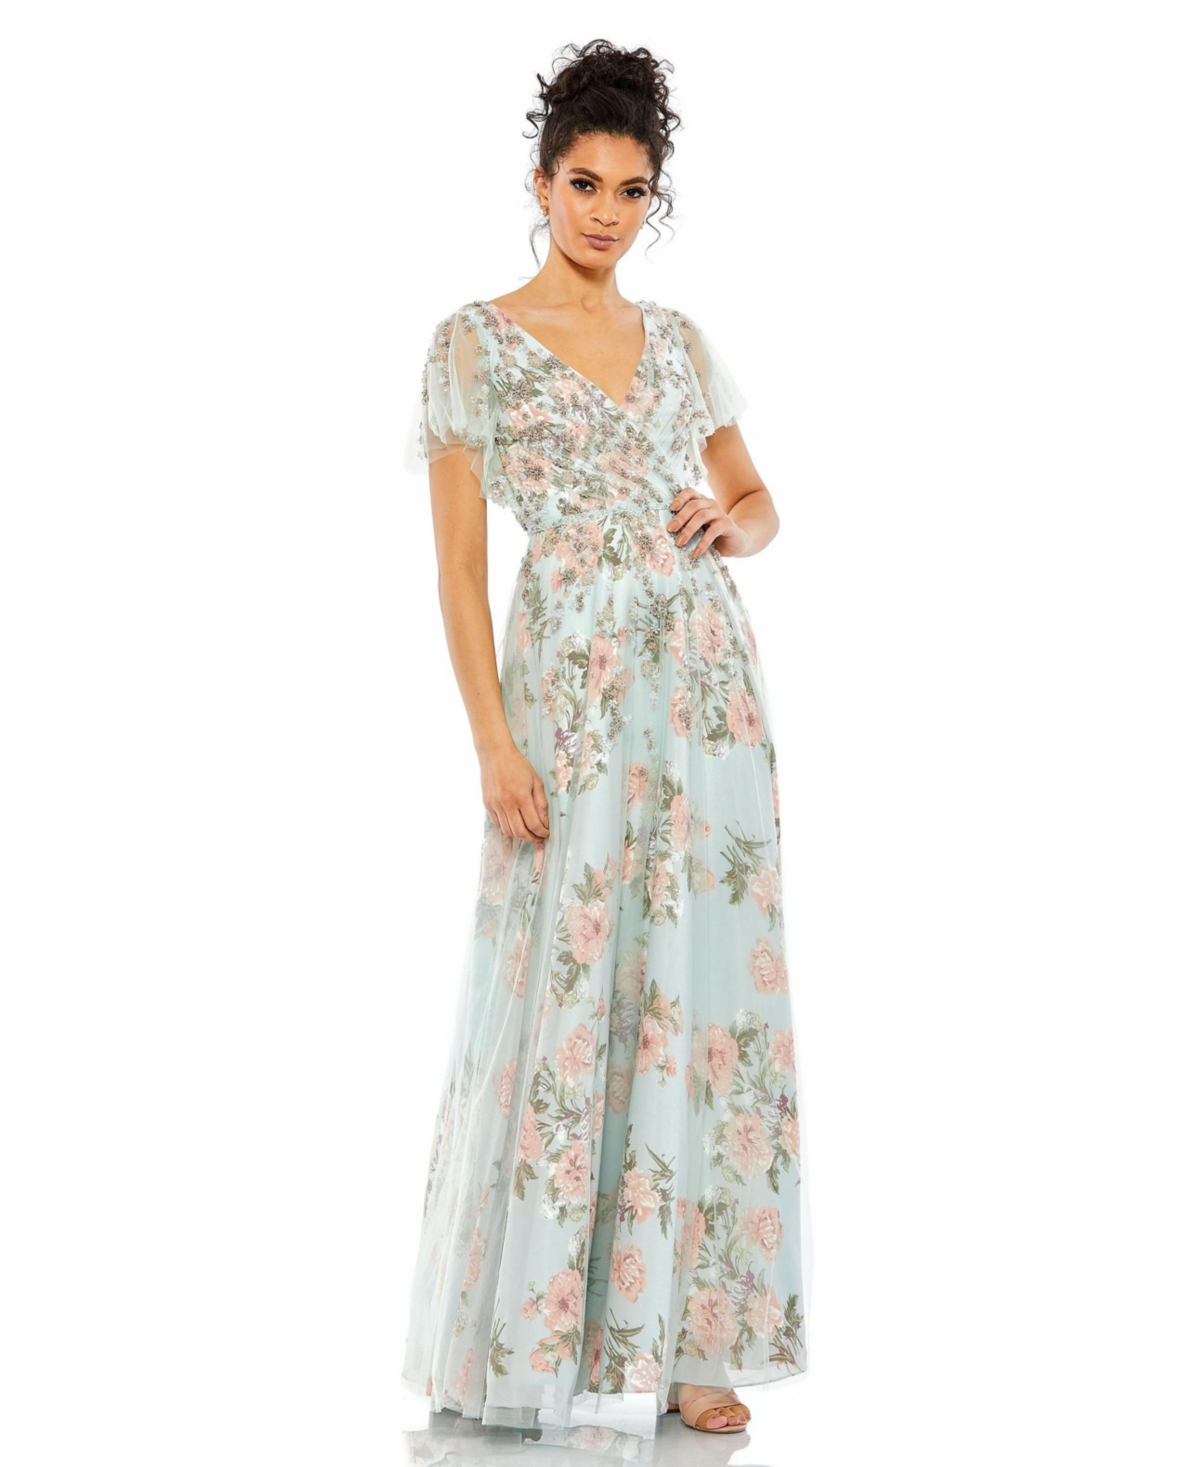 Downton Abbey Inspired Dresses Womens Floral Flutter Sleeve V-Neck Maxi Dress - Blue multi $458.00 AT vintagedancer.com